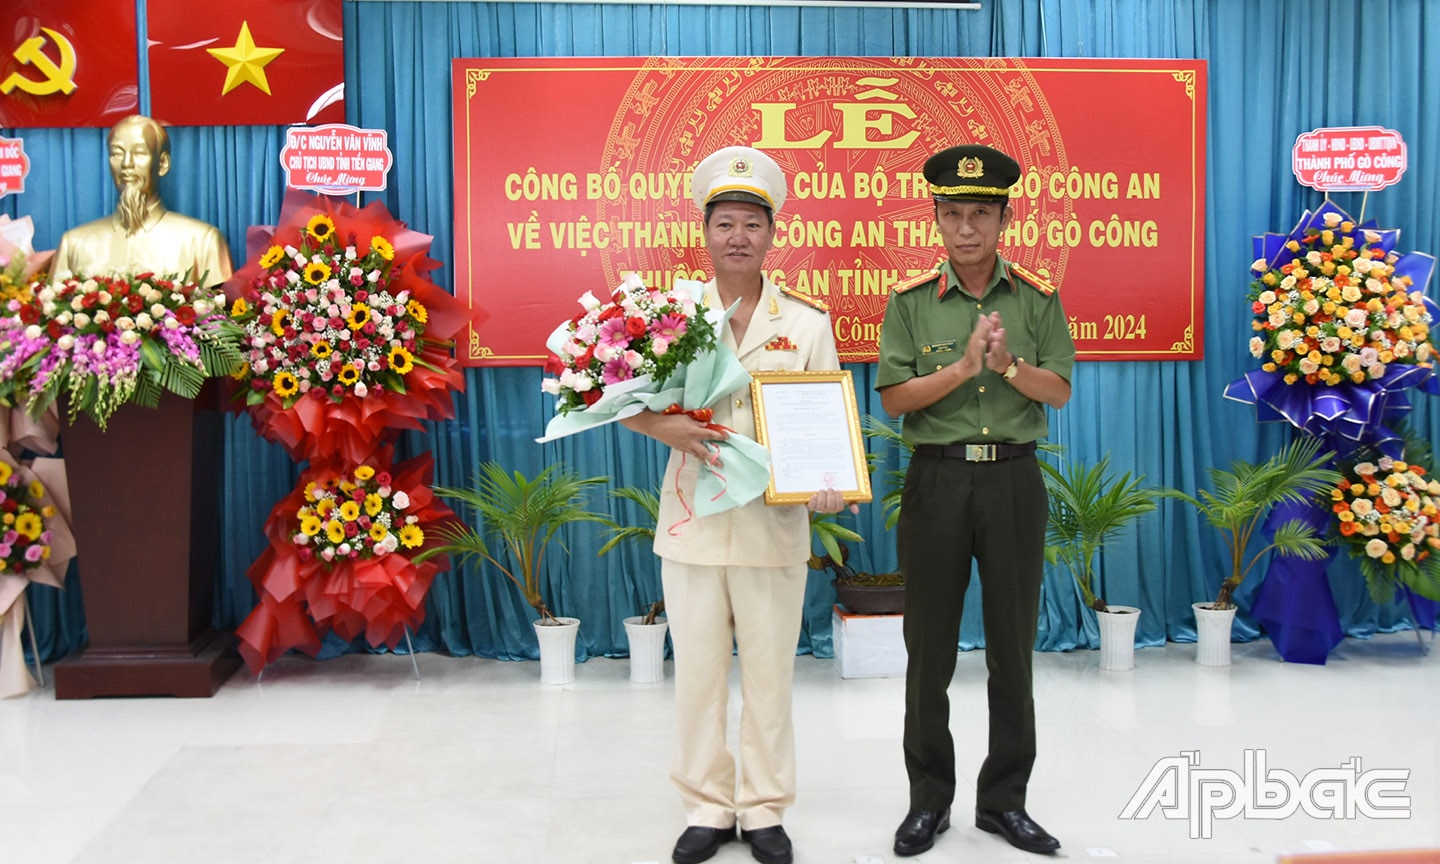 Đại tá Nguyễn Văn Nhựt trao quyết định Bộ Công an cho Công TP.Gò Công.